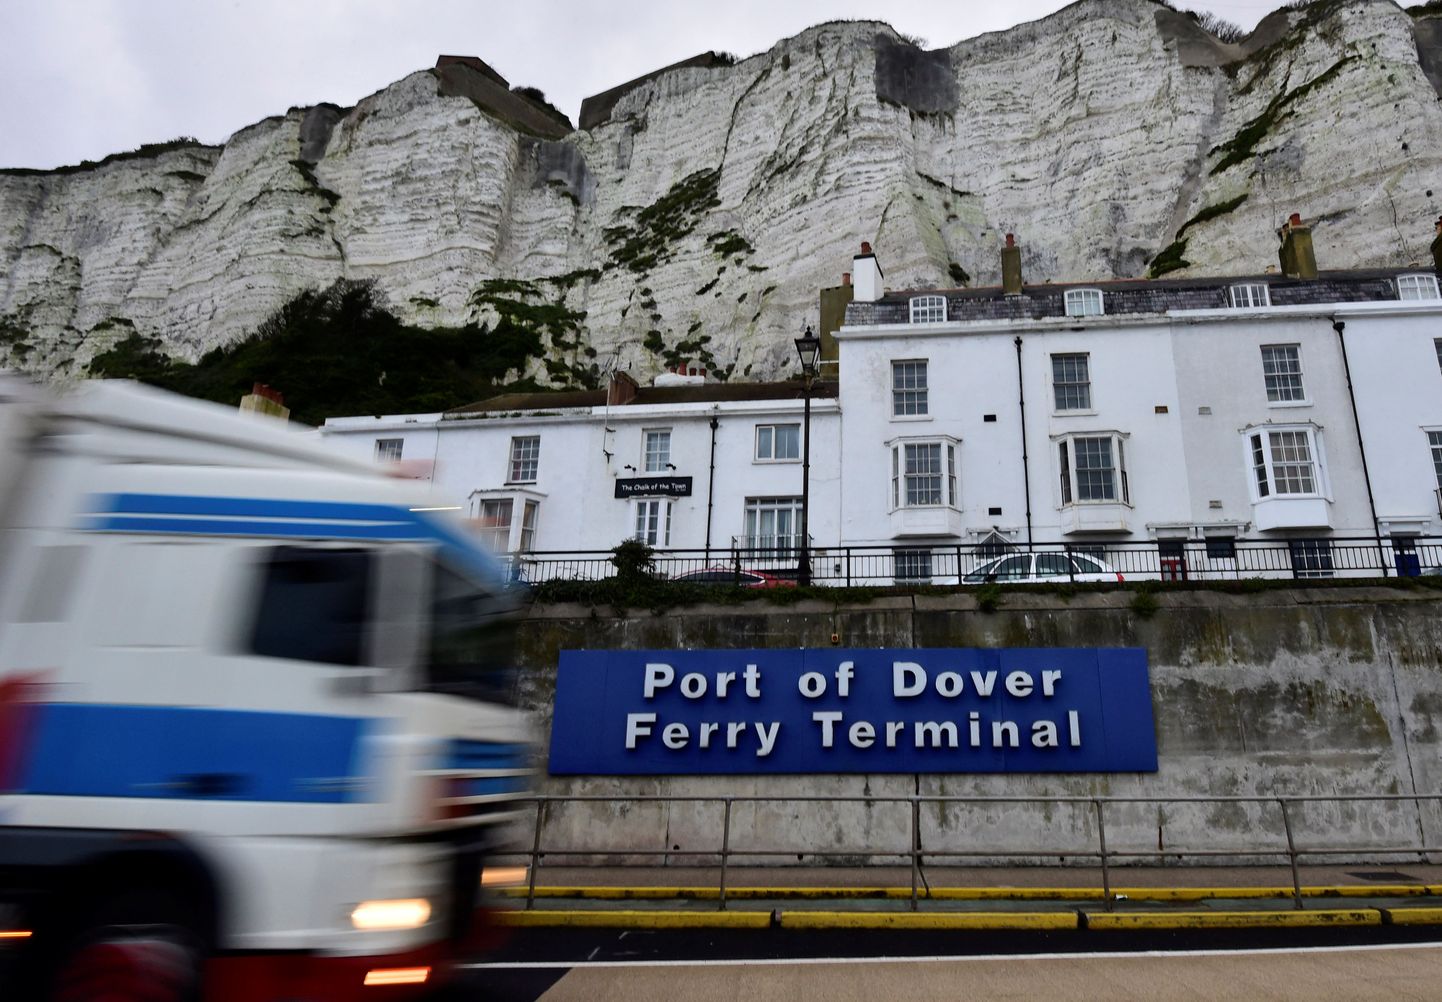 Doveri sadamalinna linnapea Neil Rix jäi videole kahtlast pulbrit ninna tõmmates.